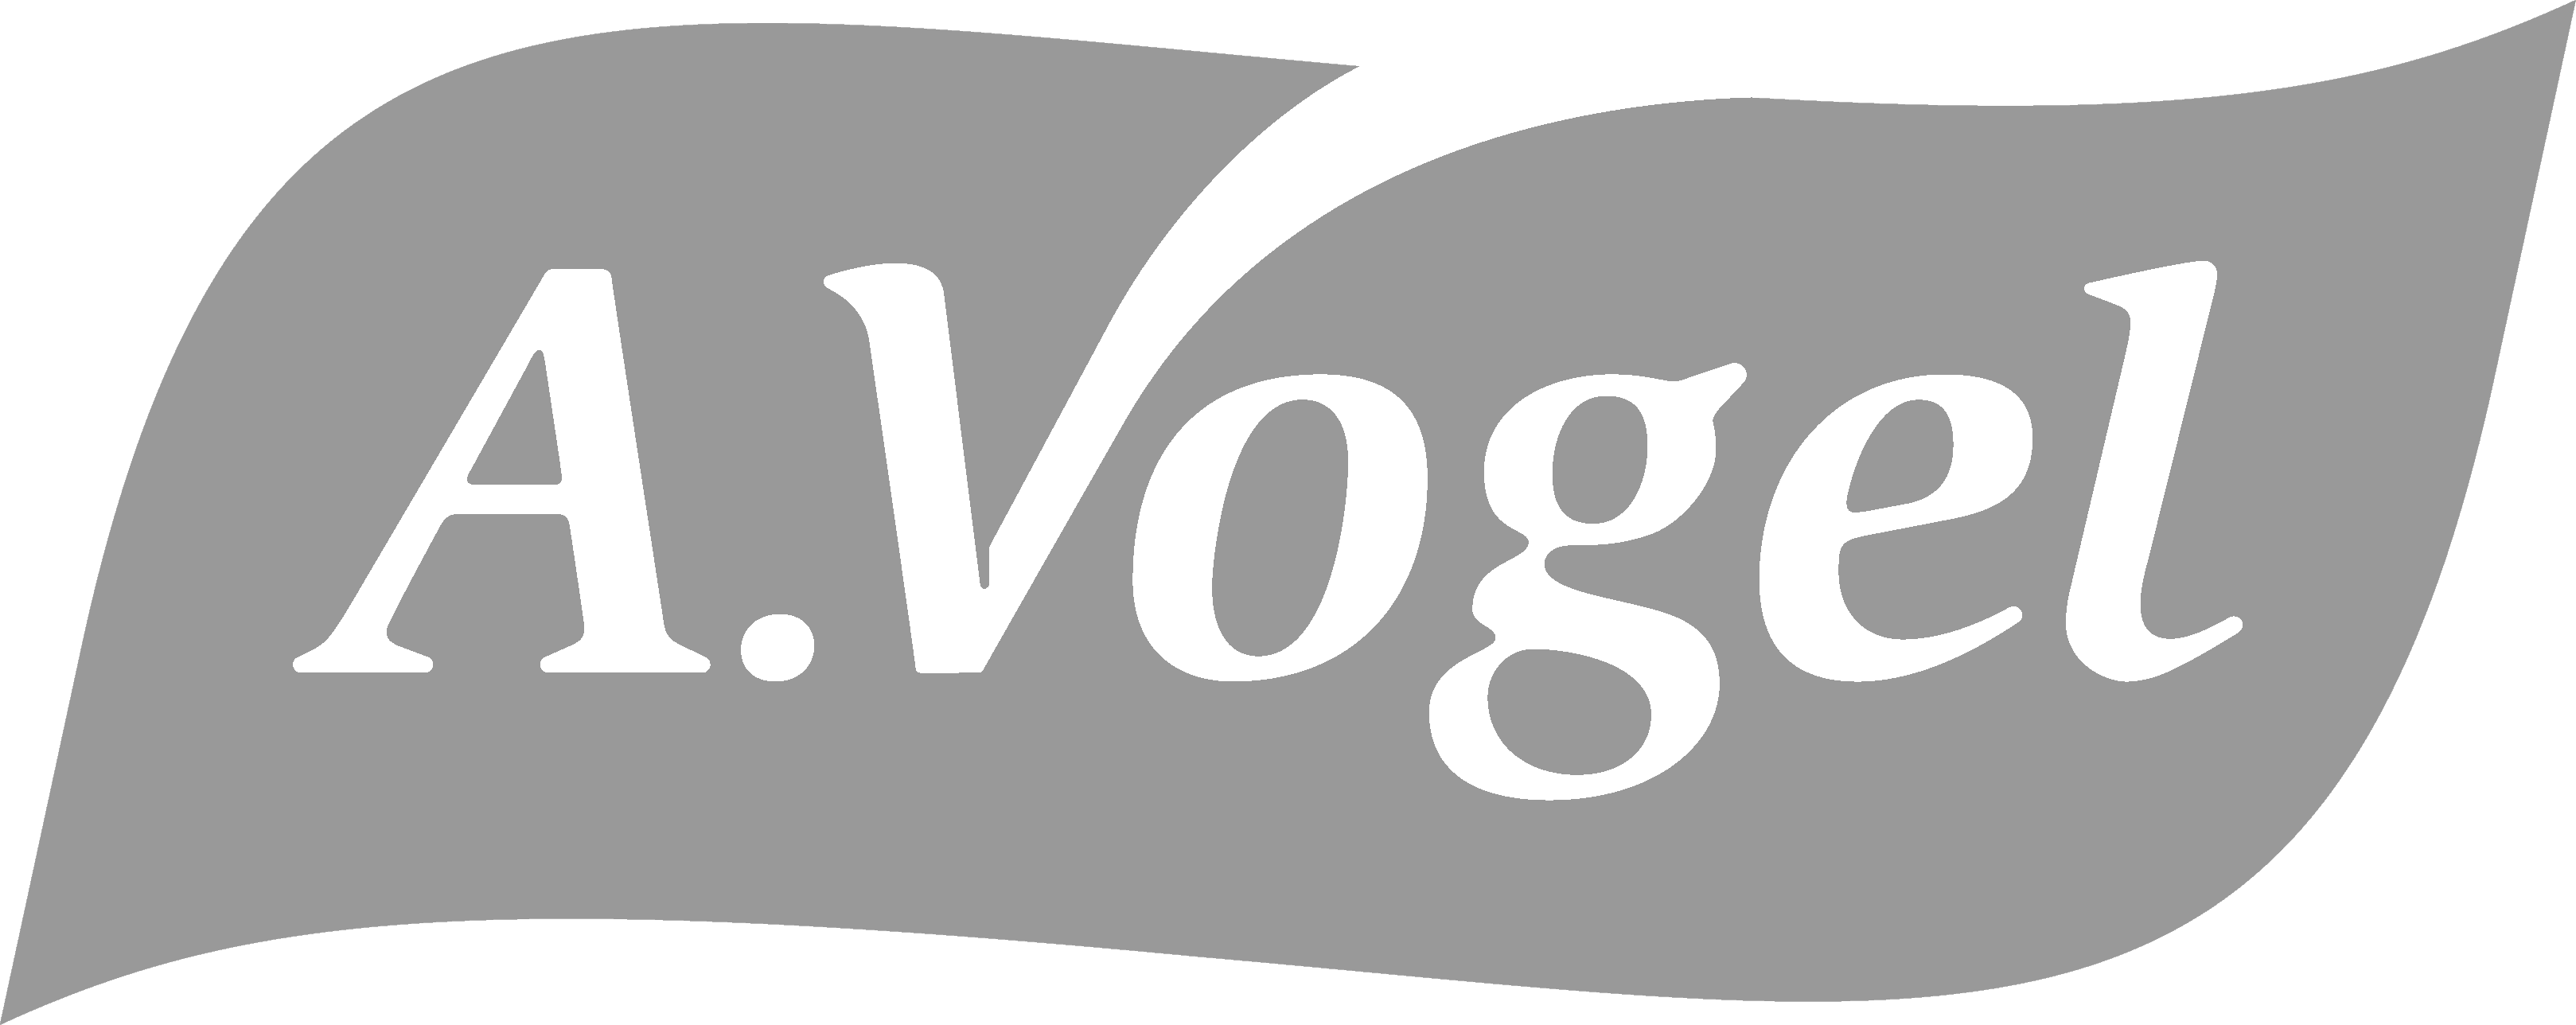 AVogel logo